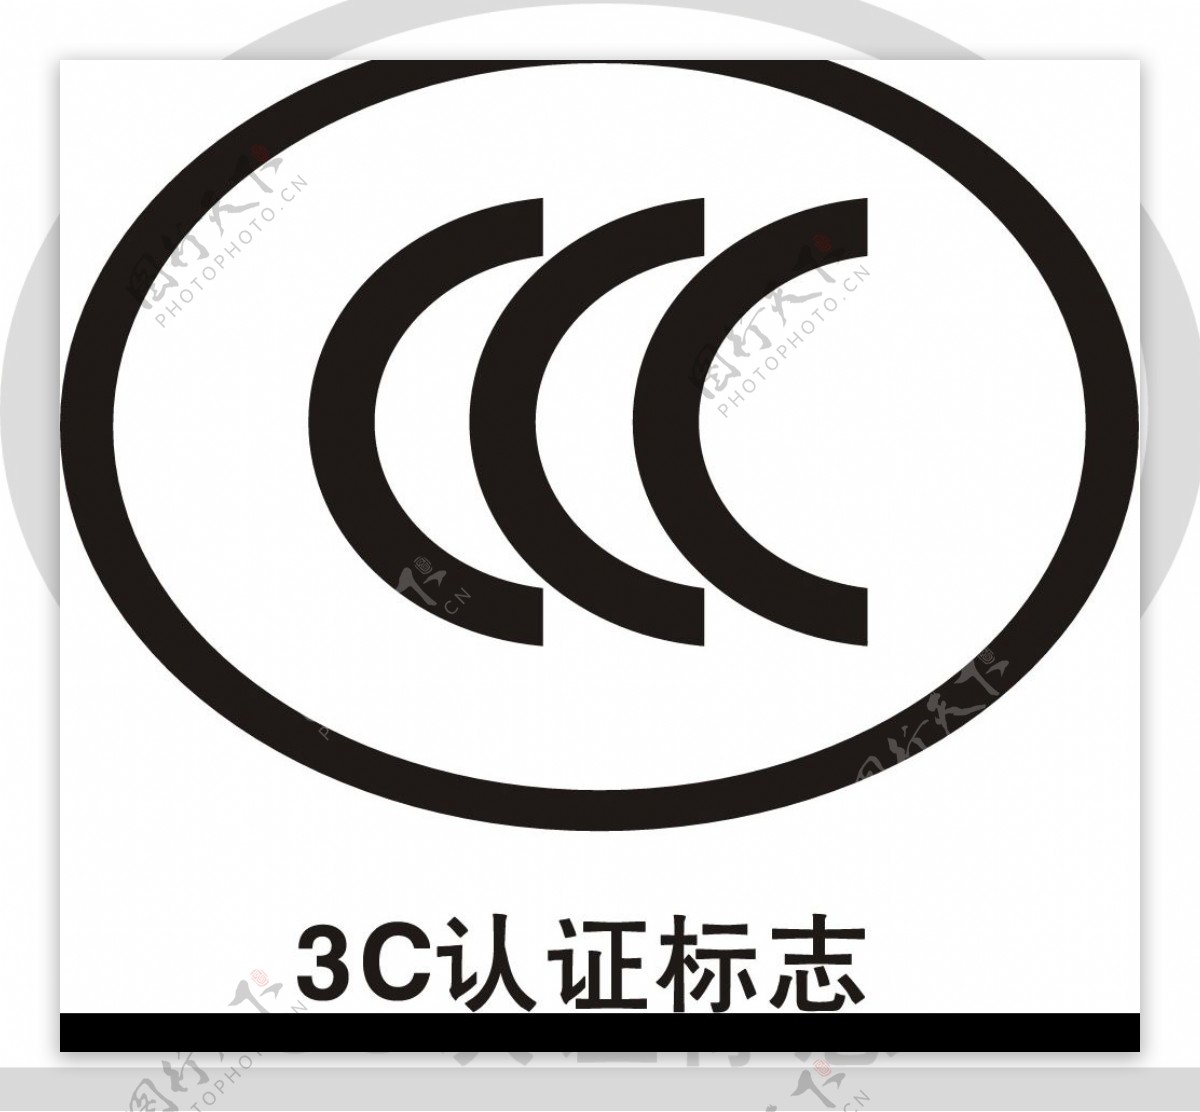 3C认证标识图片